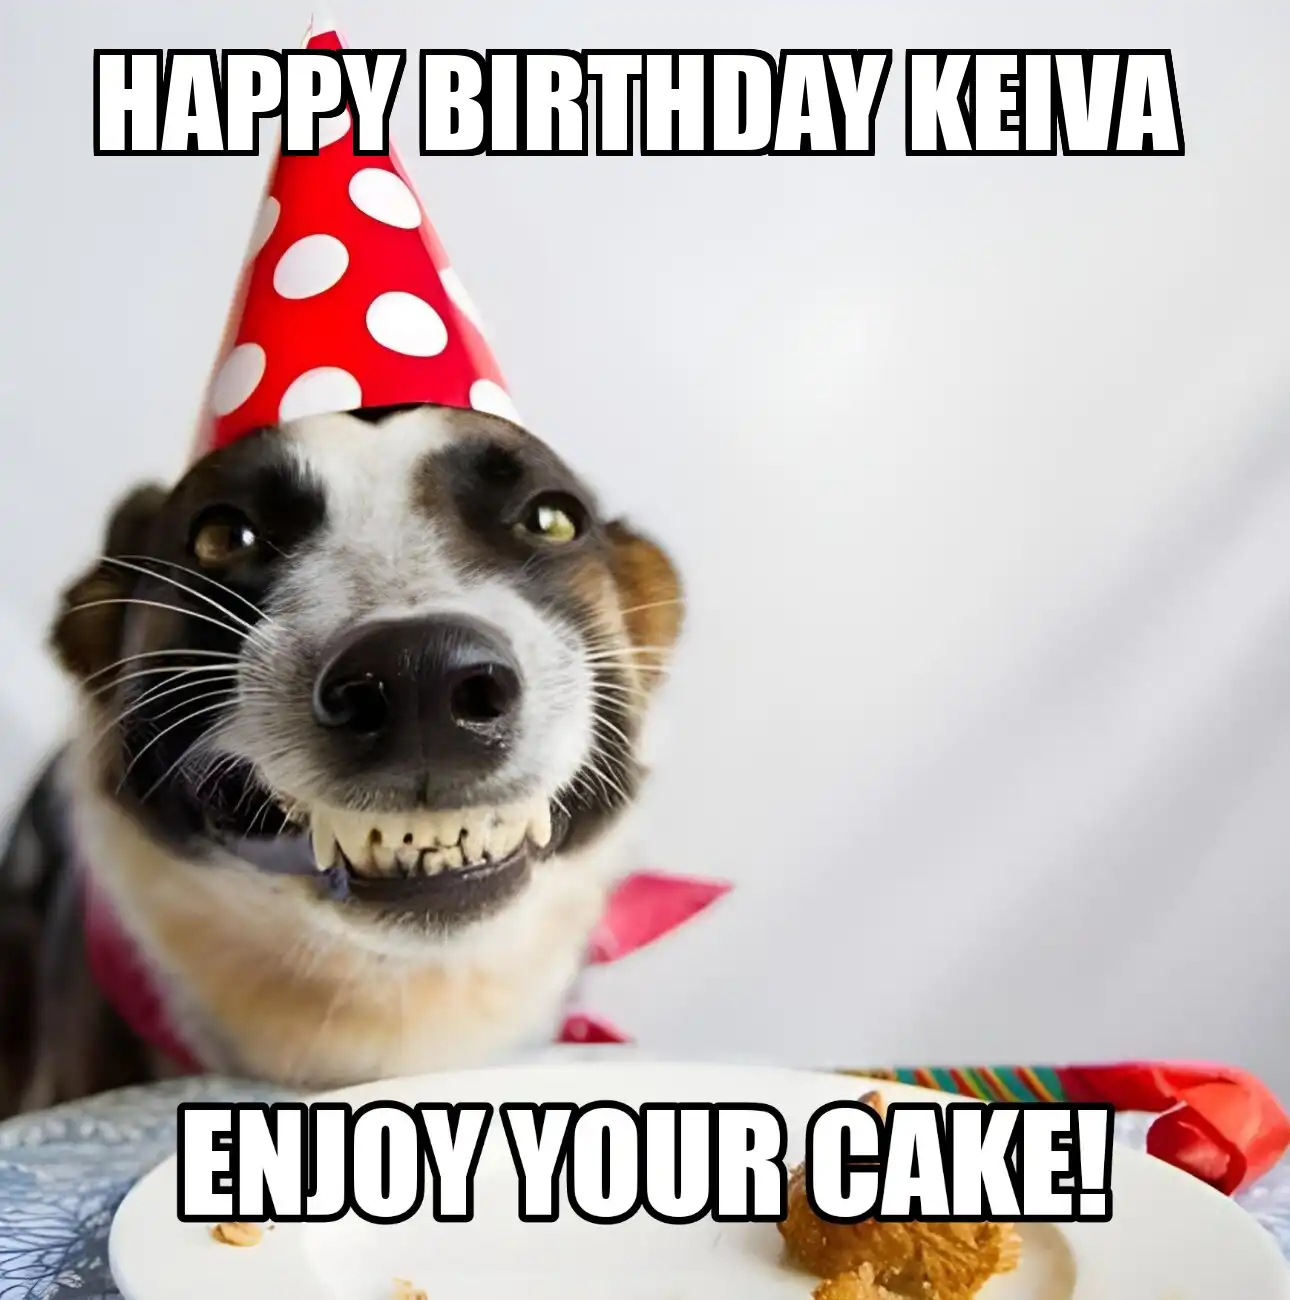 Happy Birthday Keiva Enjoy Your Cake Dog Meme